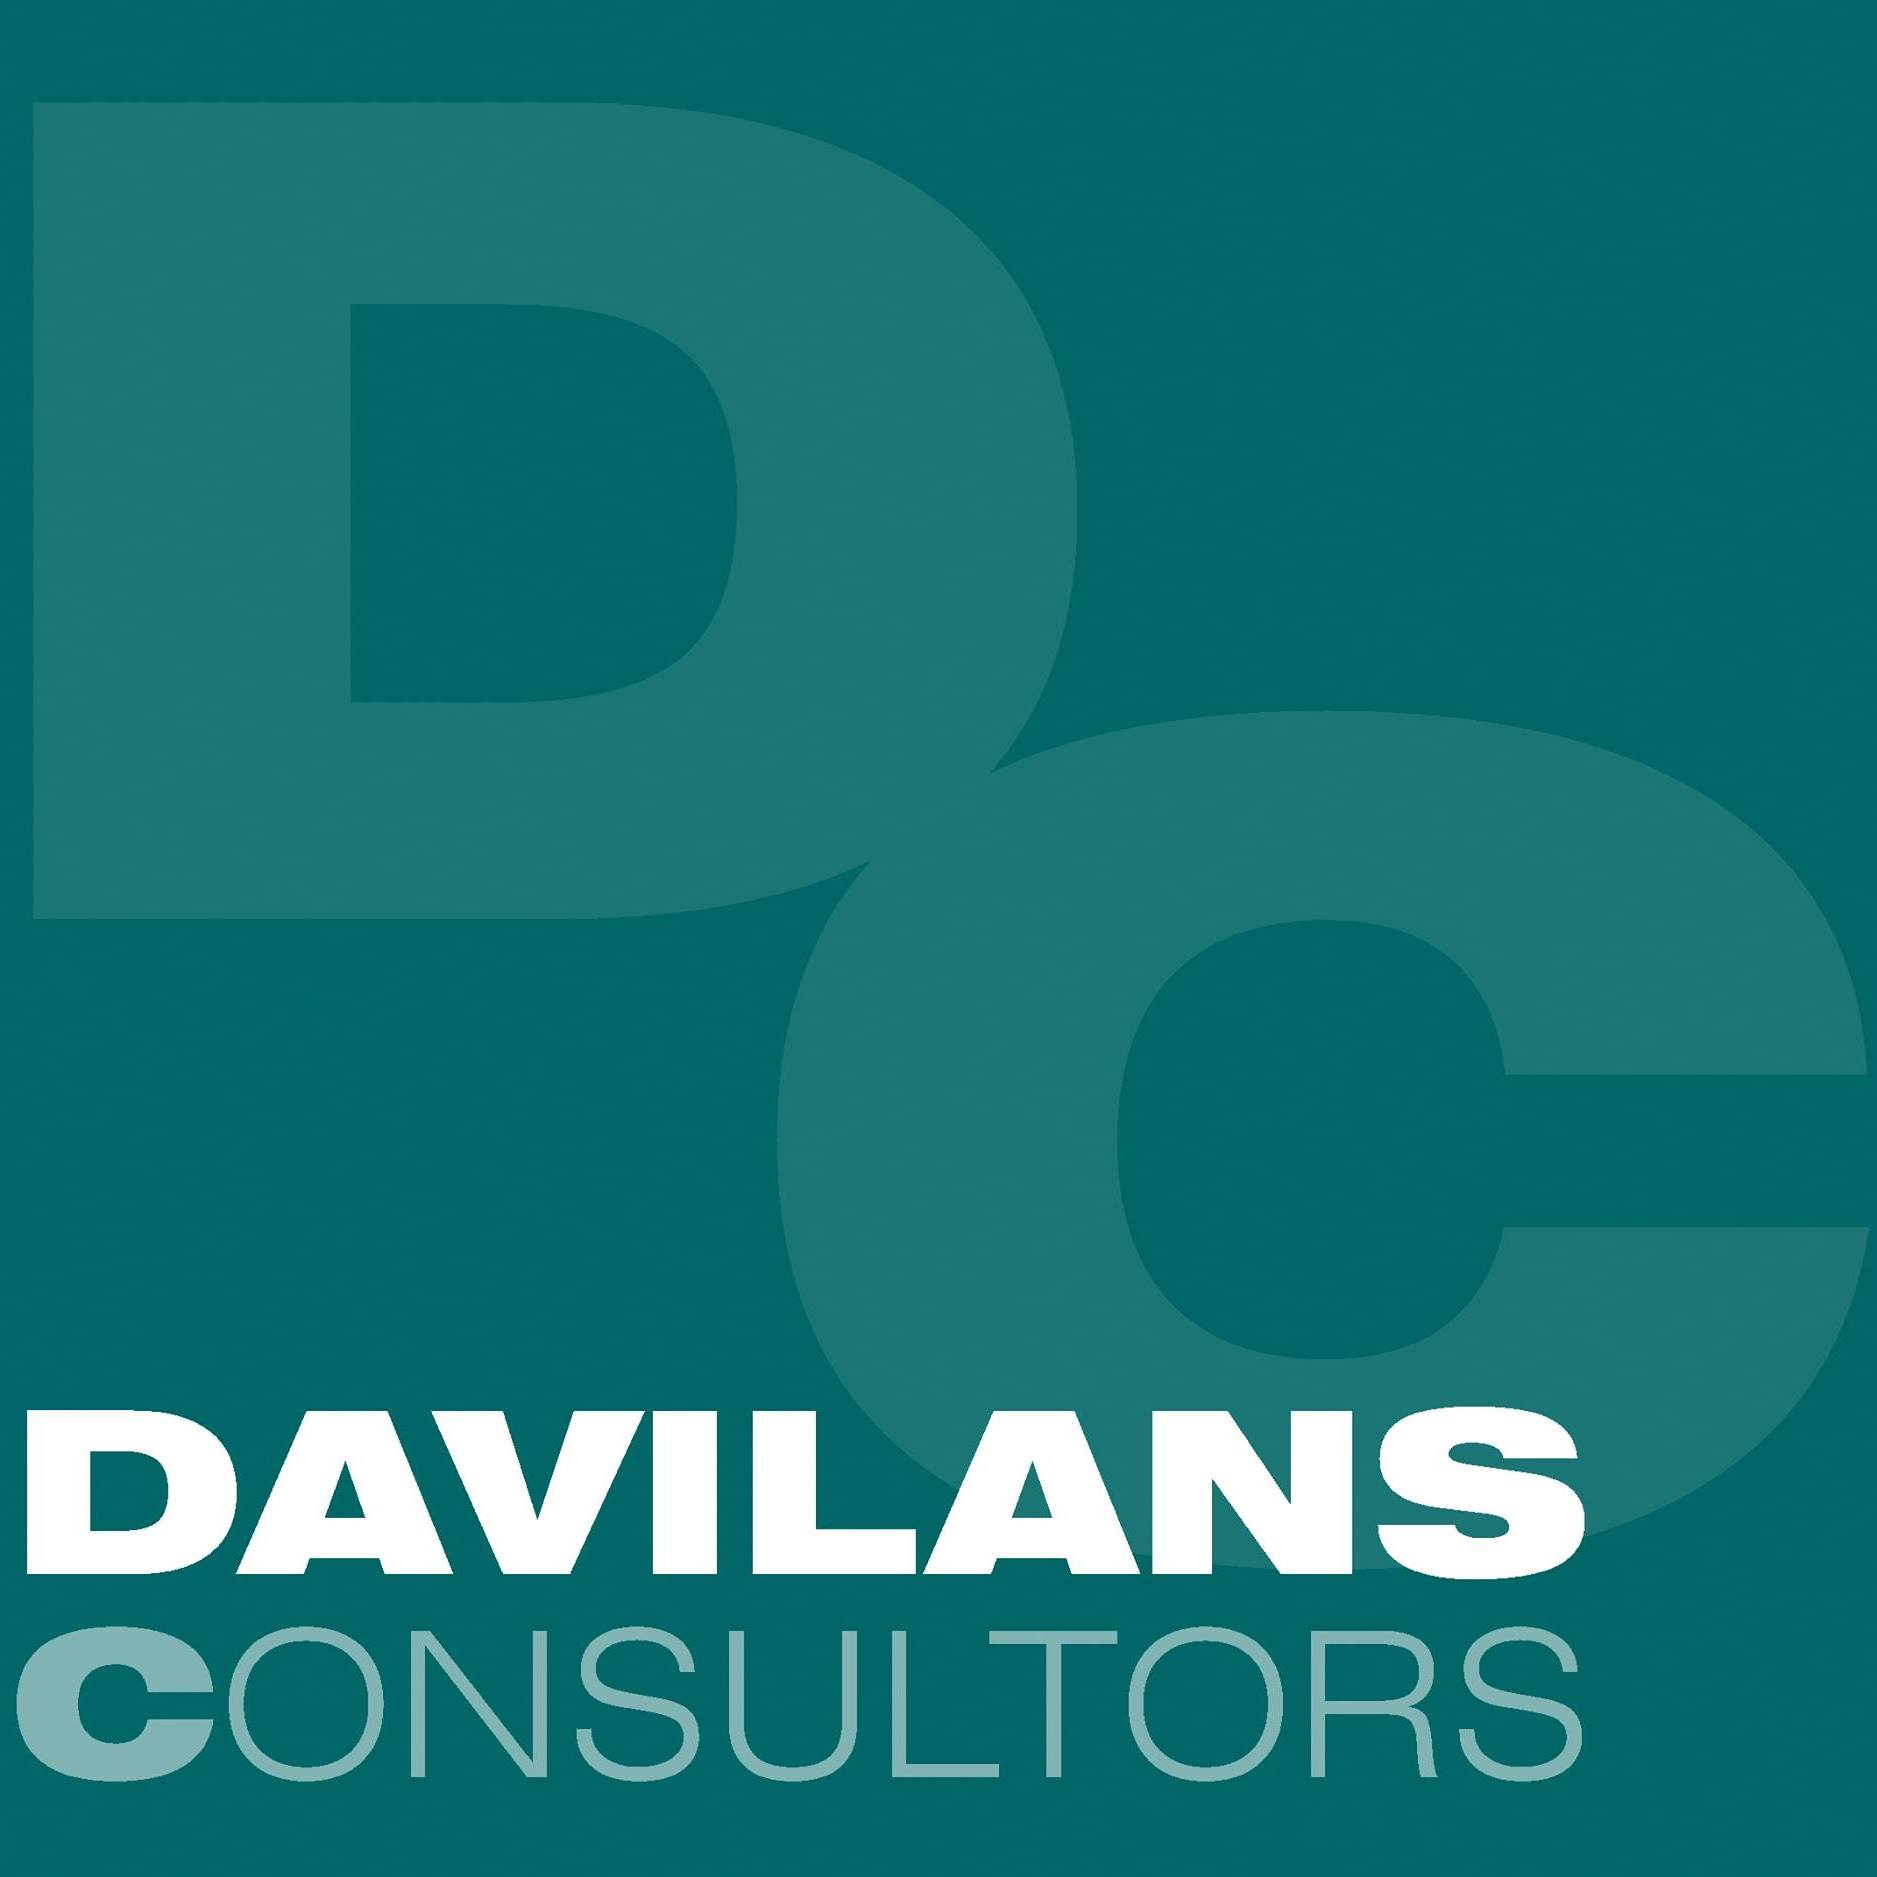 Davilans Consultors